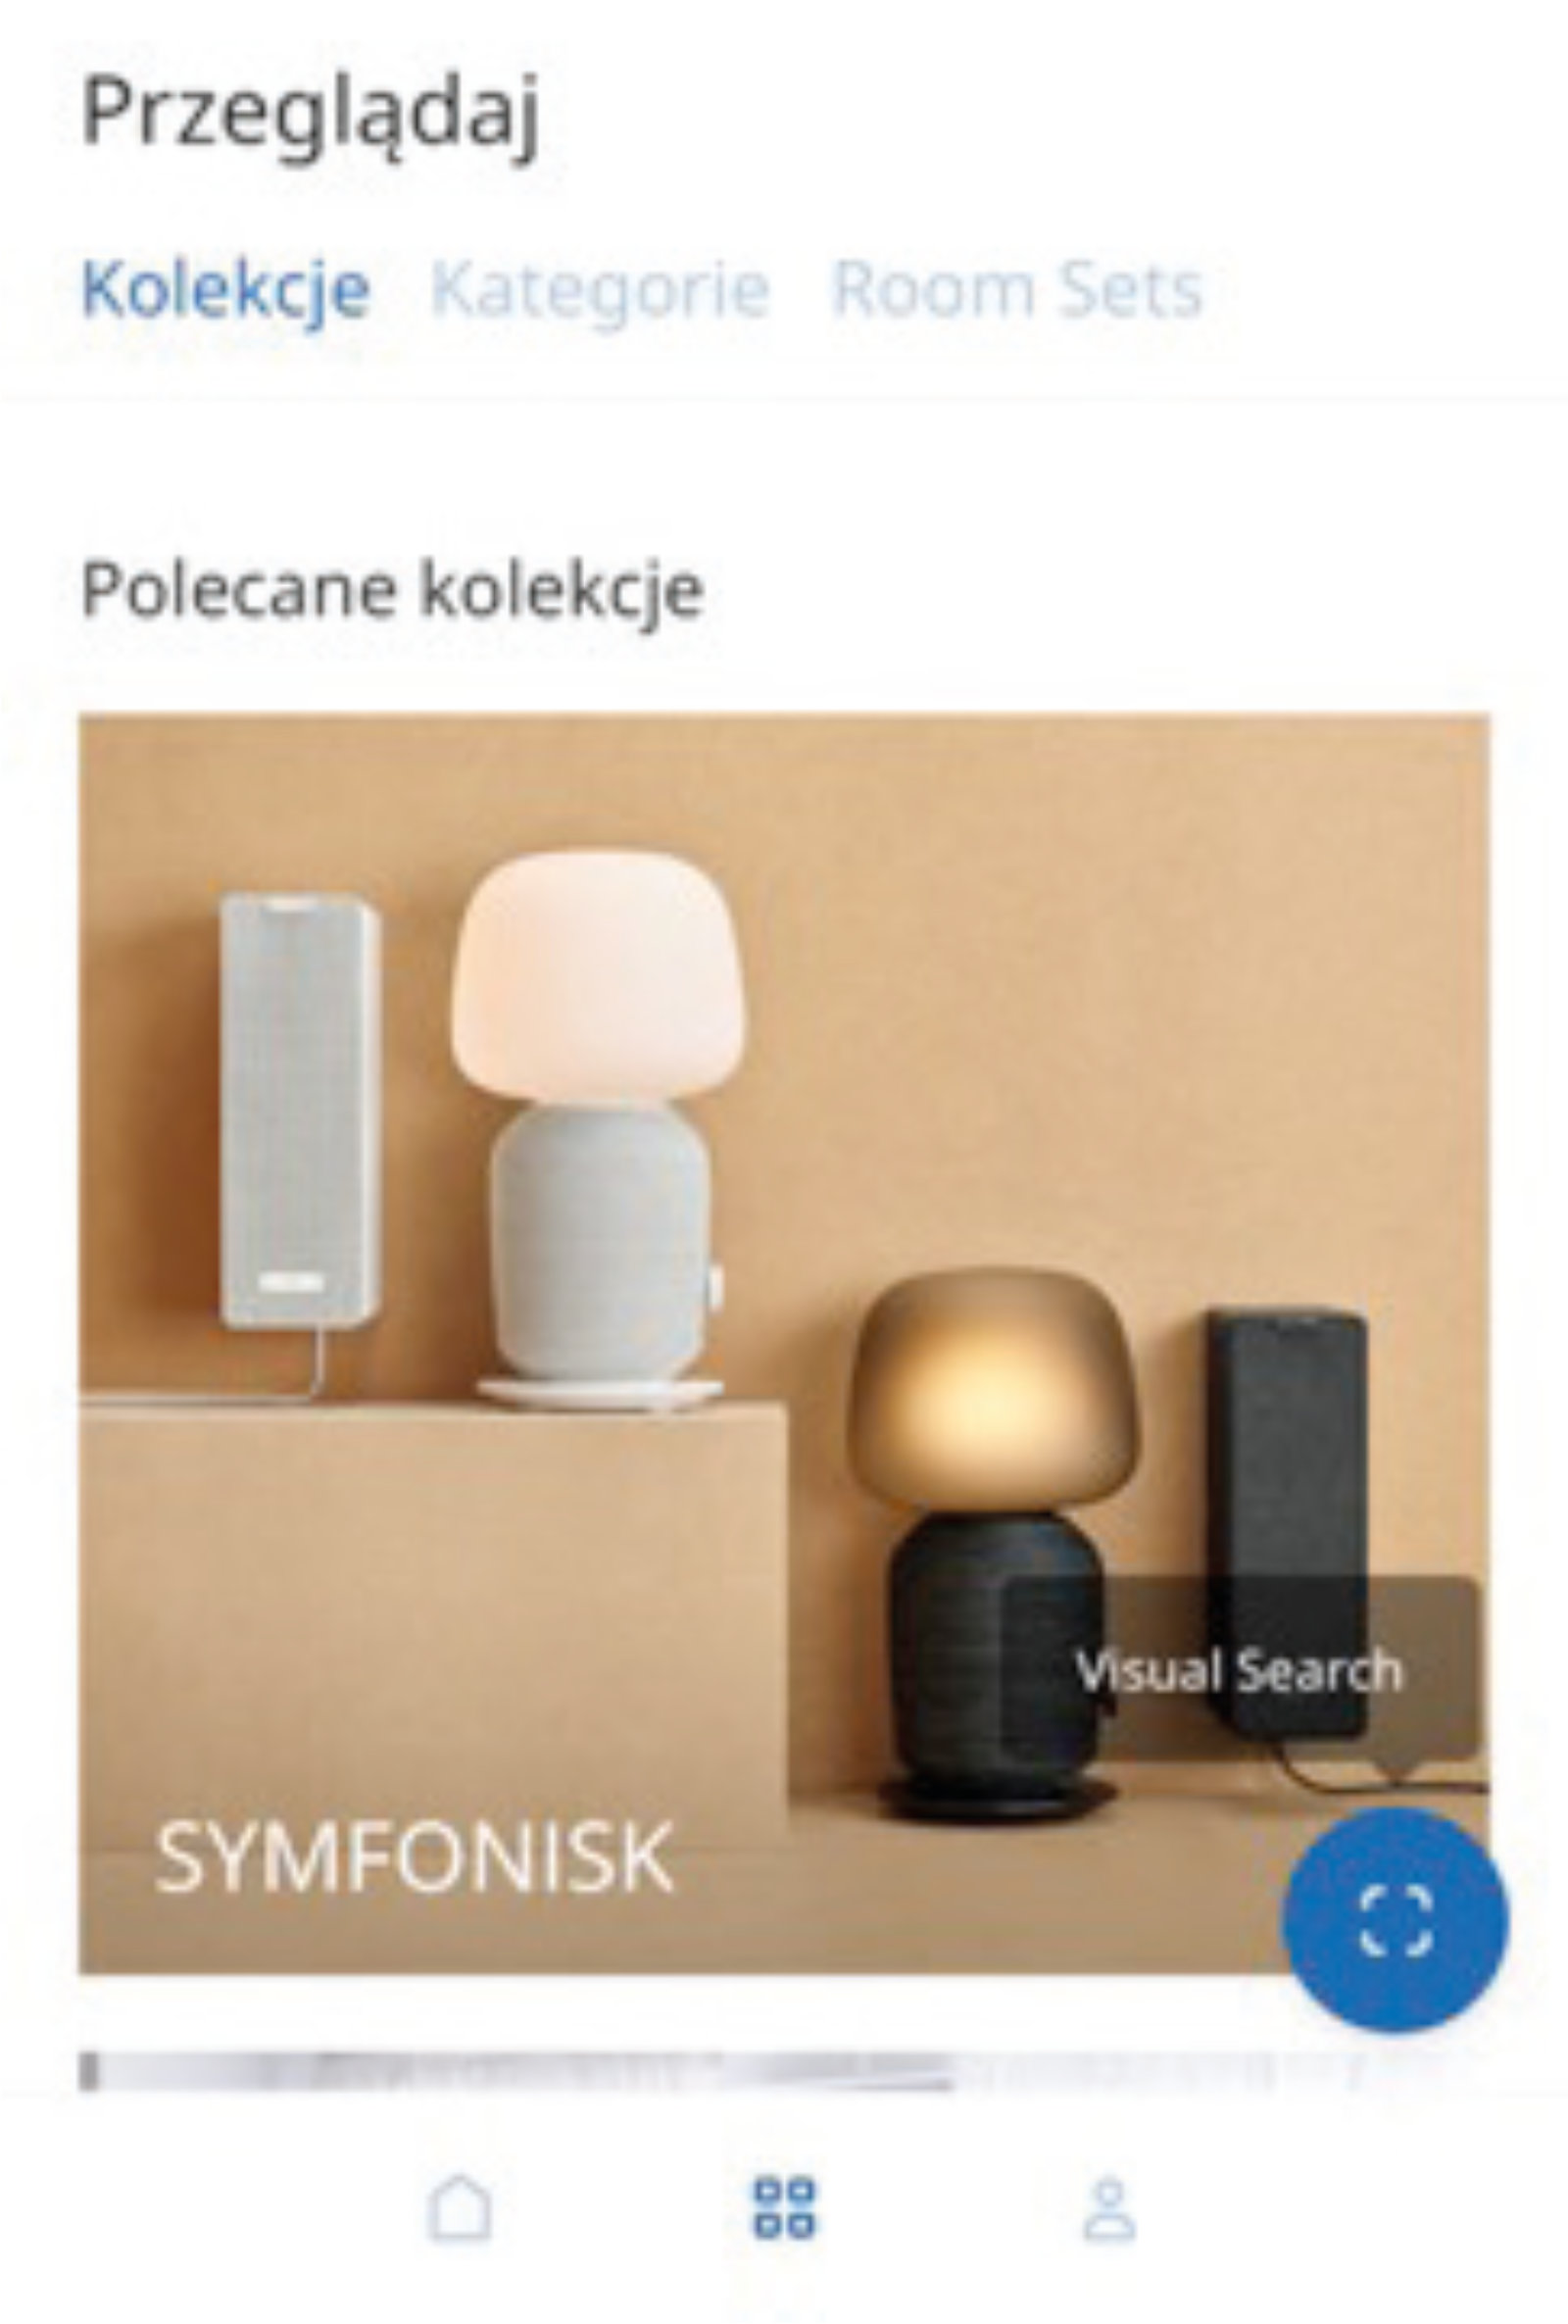 Zrzut ekranu aplikacji Ikea Place